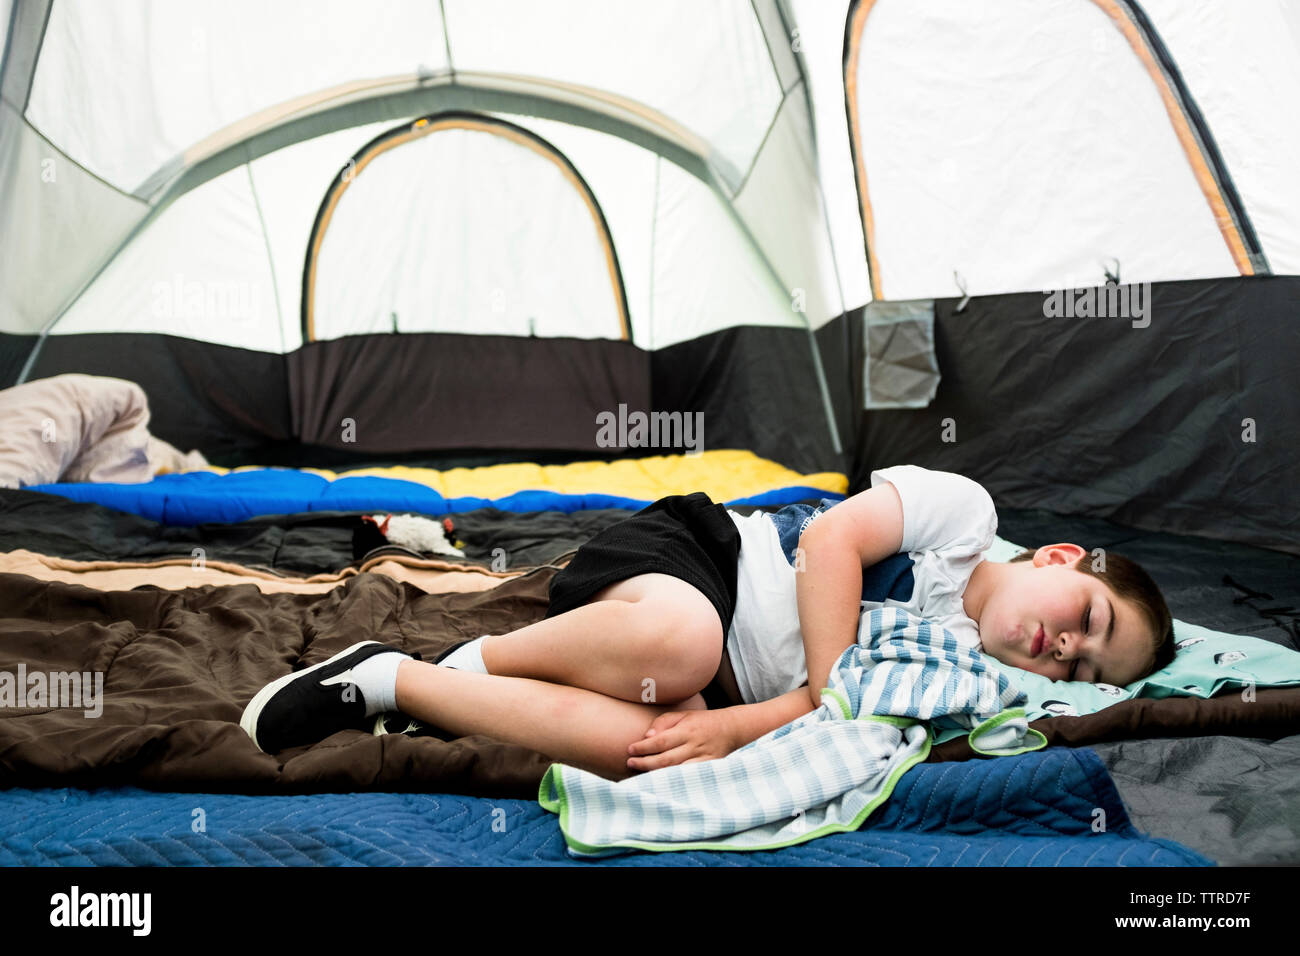 Camping boys. Sleeper палатка. Каремат для палатки. Sleep in a Tent. Палатка и спальный мешок с БЕНДИ.